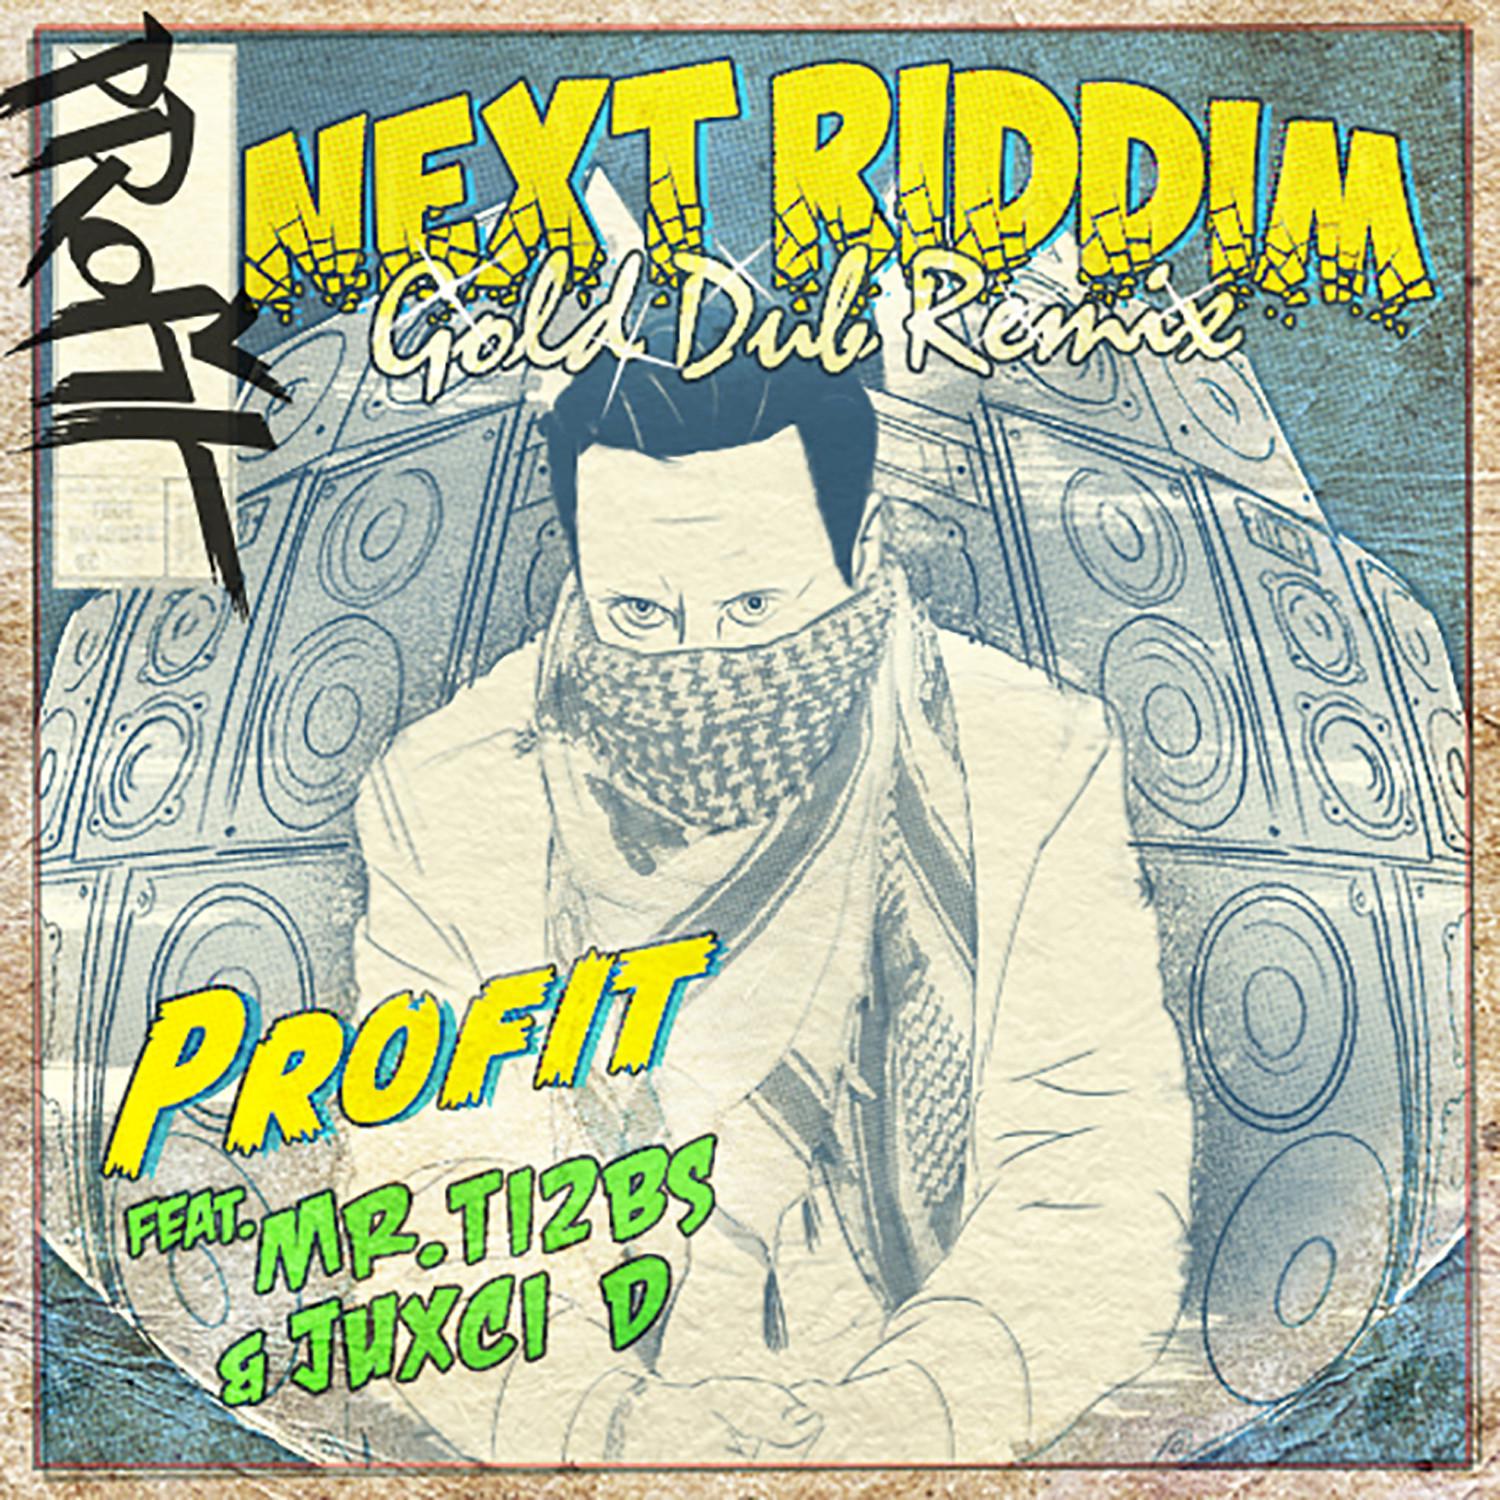 Next Riddim (Instrumental) (Gold Dubs Remix)